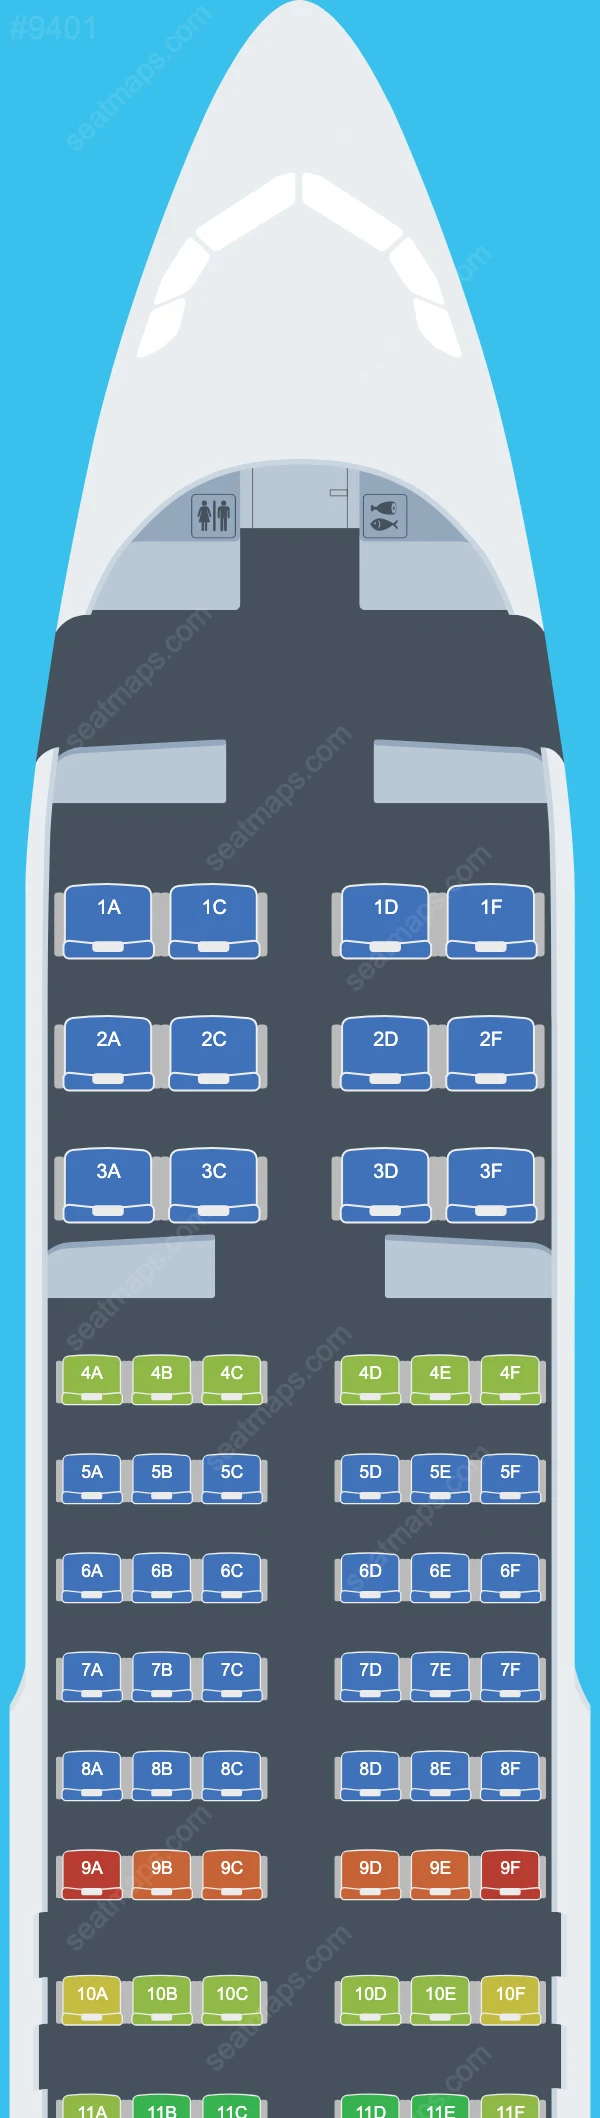 Air Seychelles Airbus A320 Plan de Salle A320-200neo